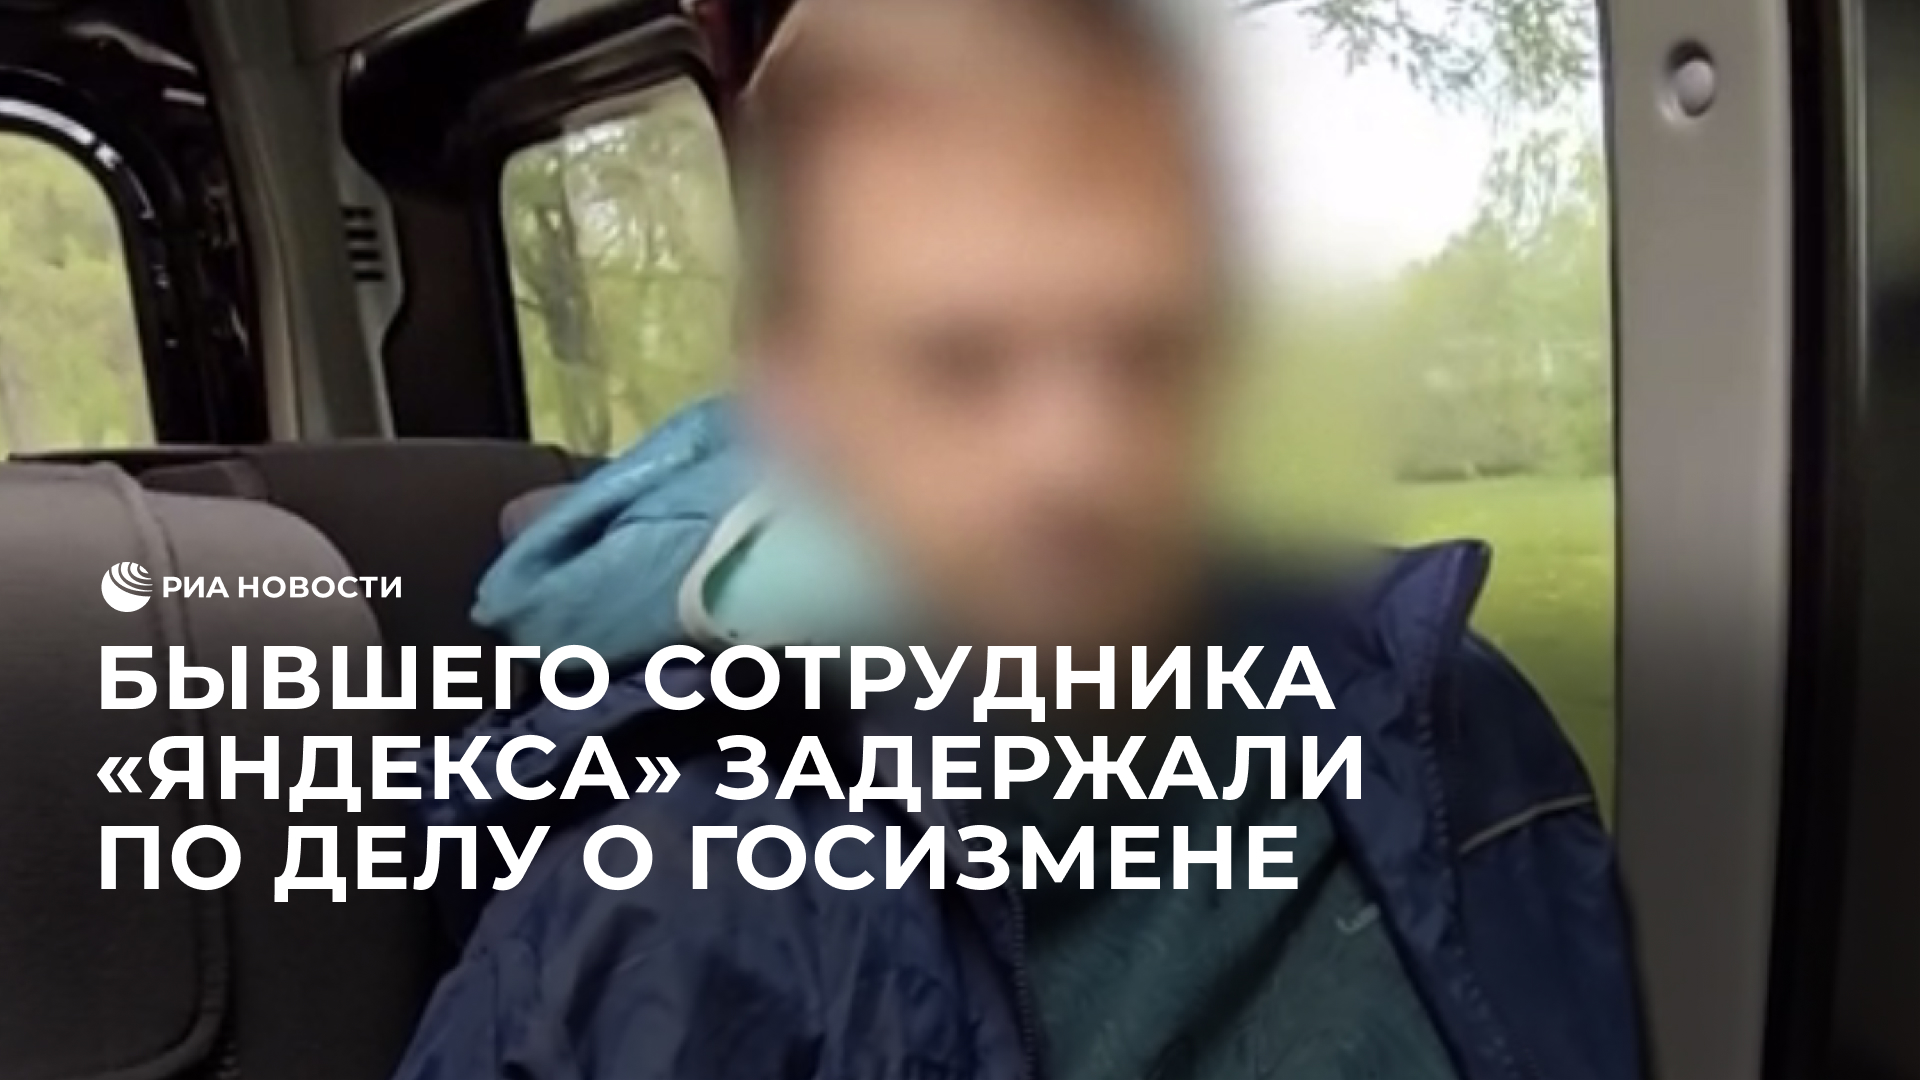 Бывшего сотрудника "Яндекса" задержали по делу о госизмене